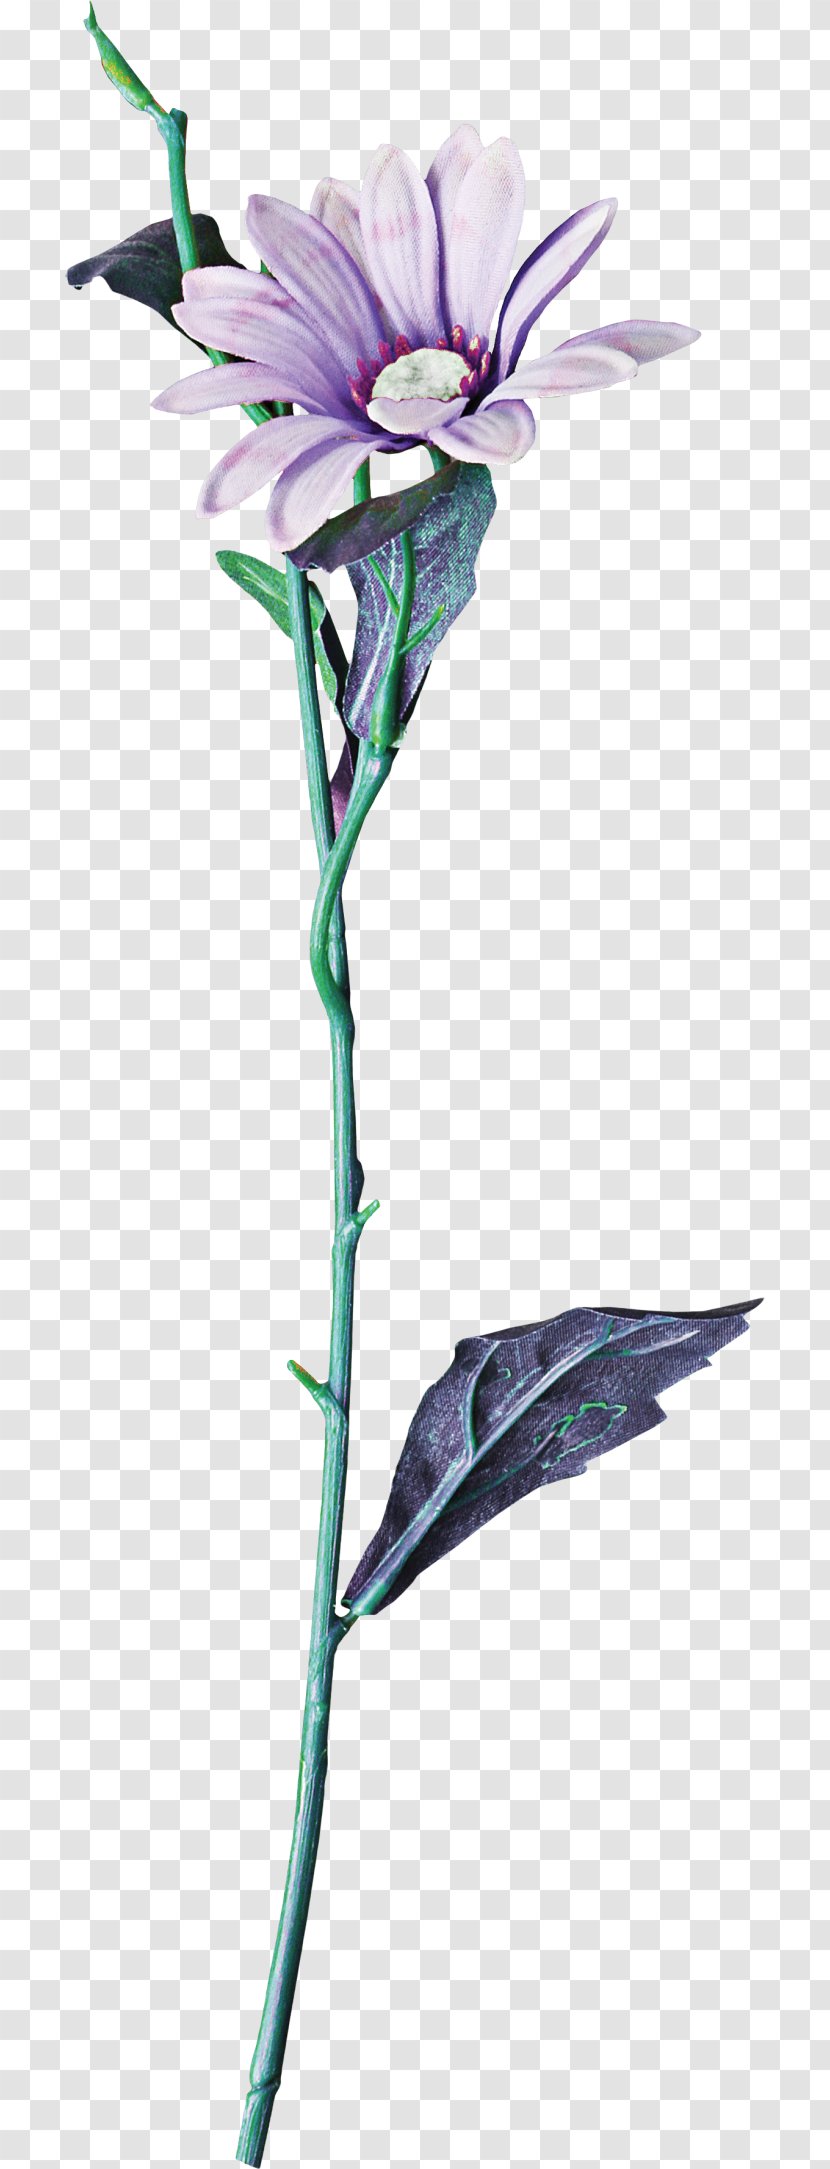 Cut Flowers Floral Design Branch Plant Stem - Euclidean Flower Transparent PNG